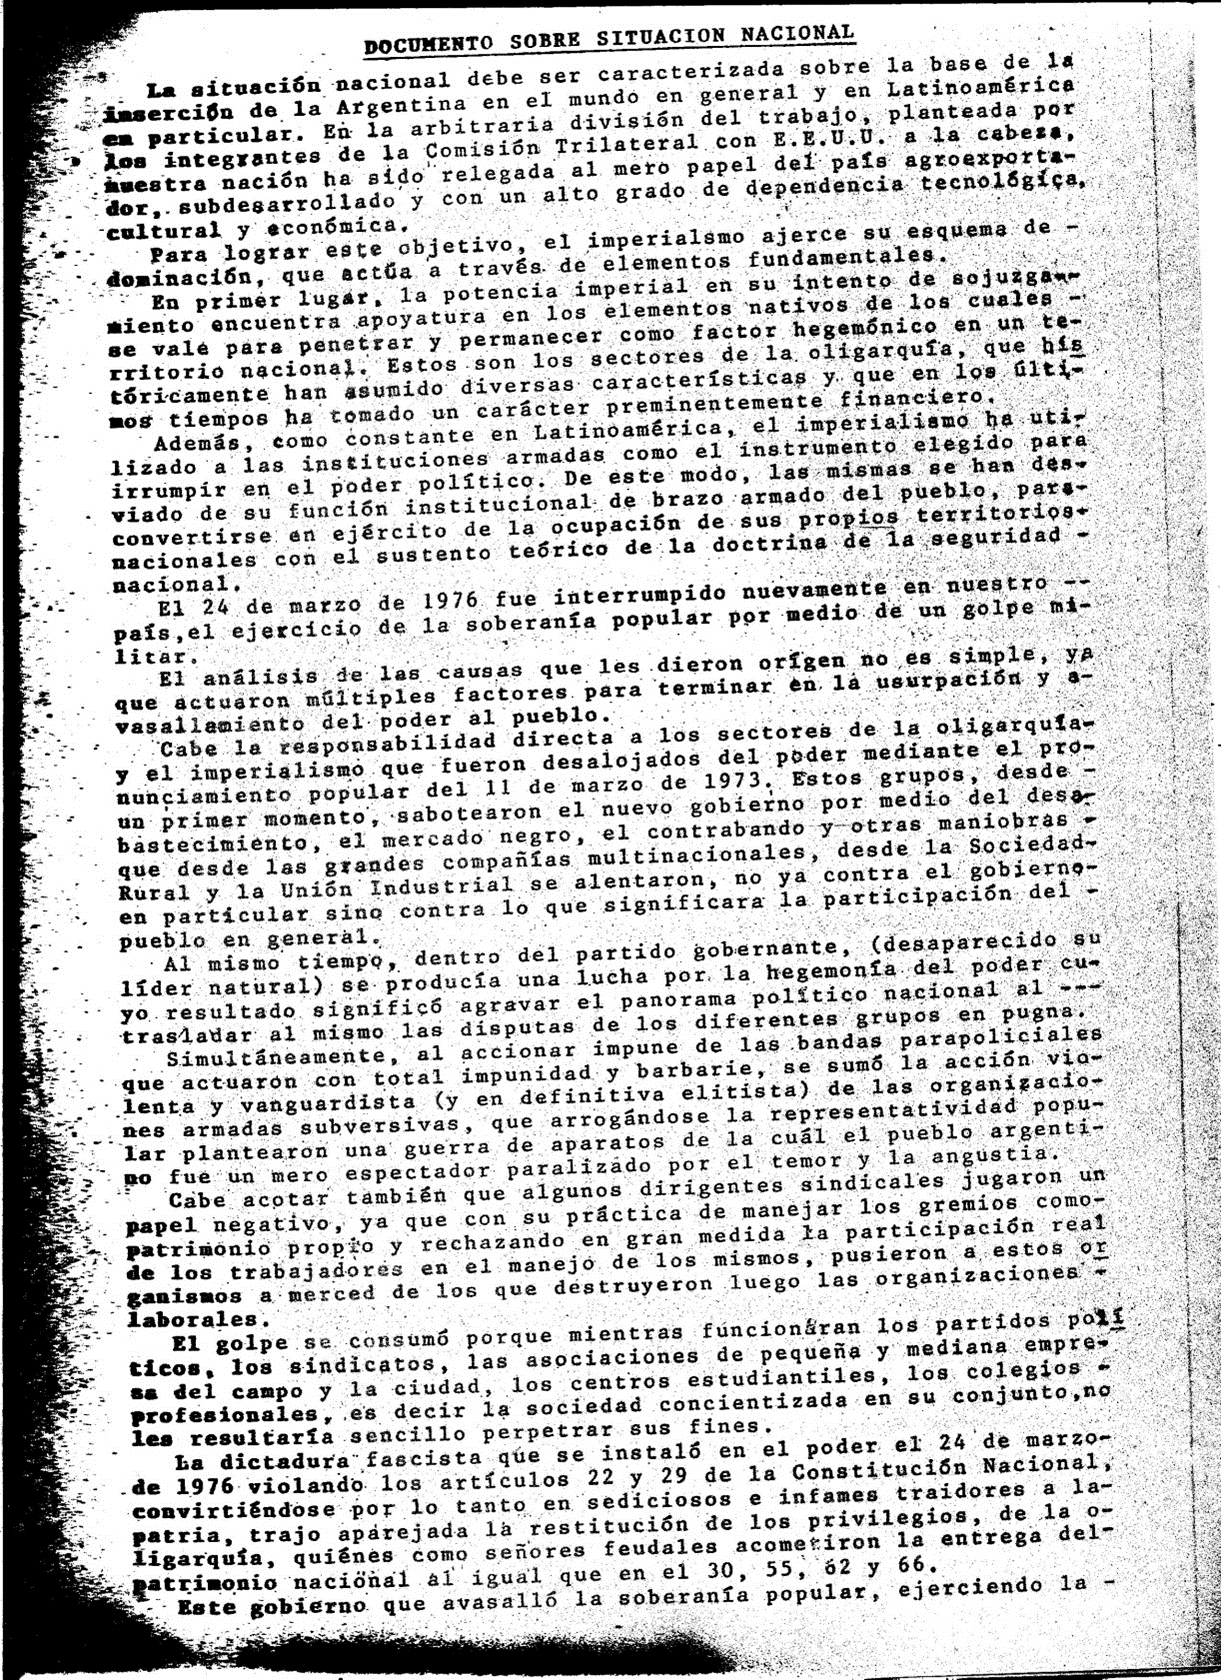 Portada del documento de la Federación Universitaria de La Plata sobre la situación nacional, 1984